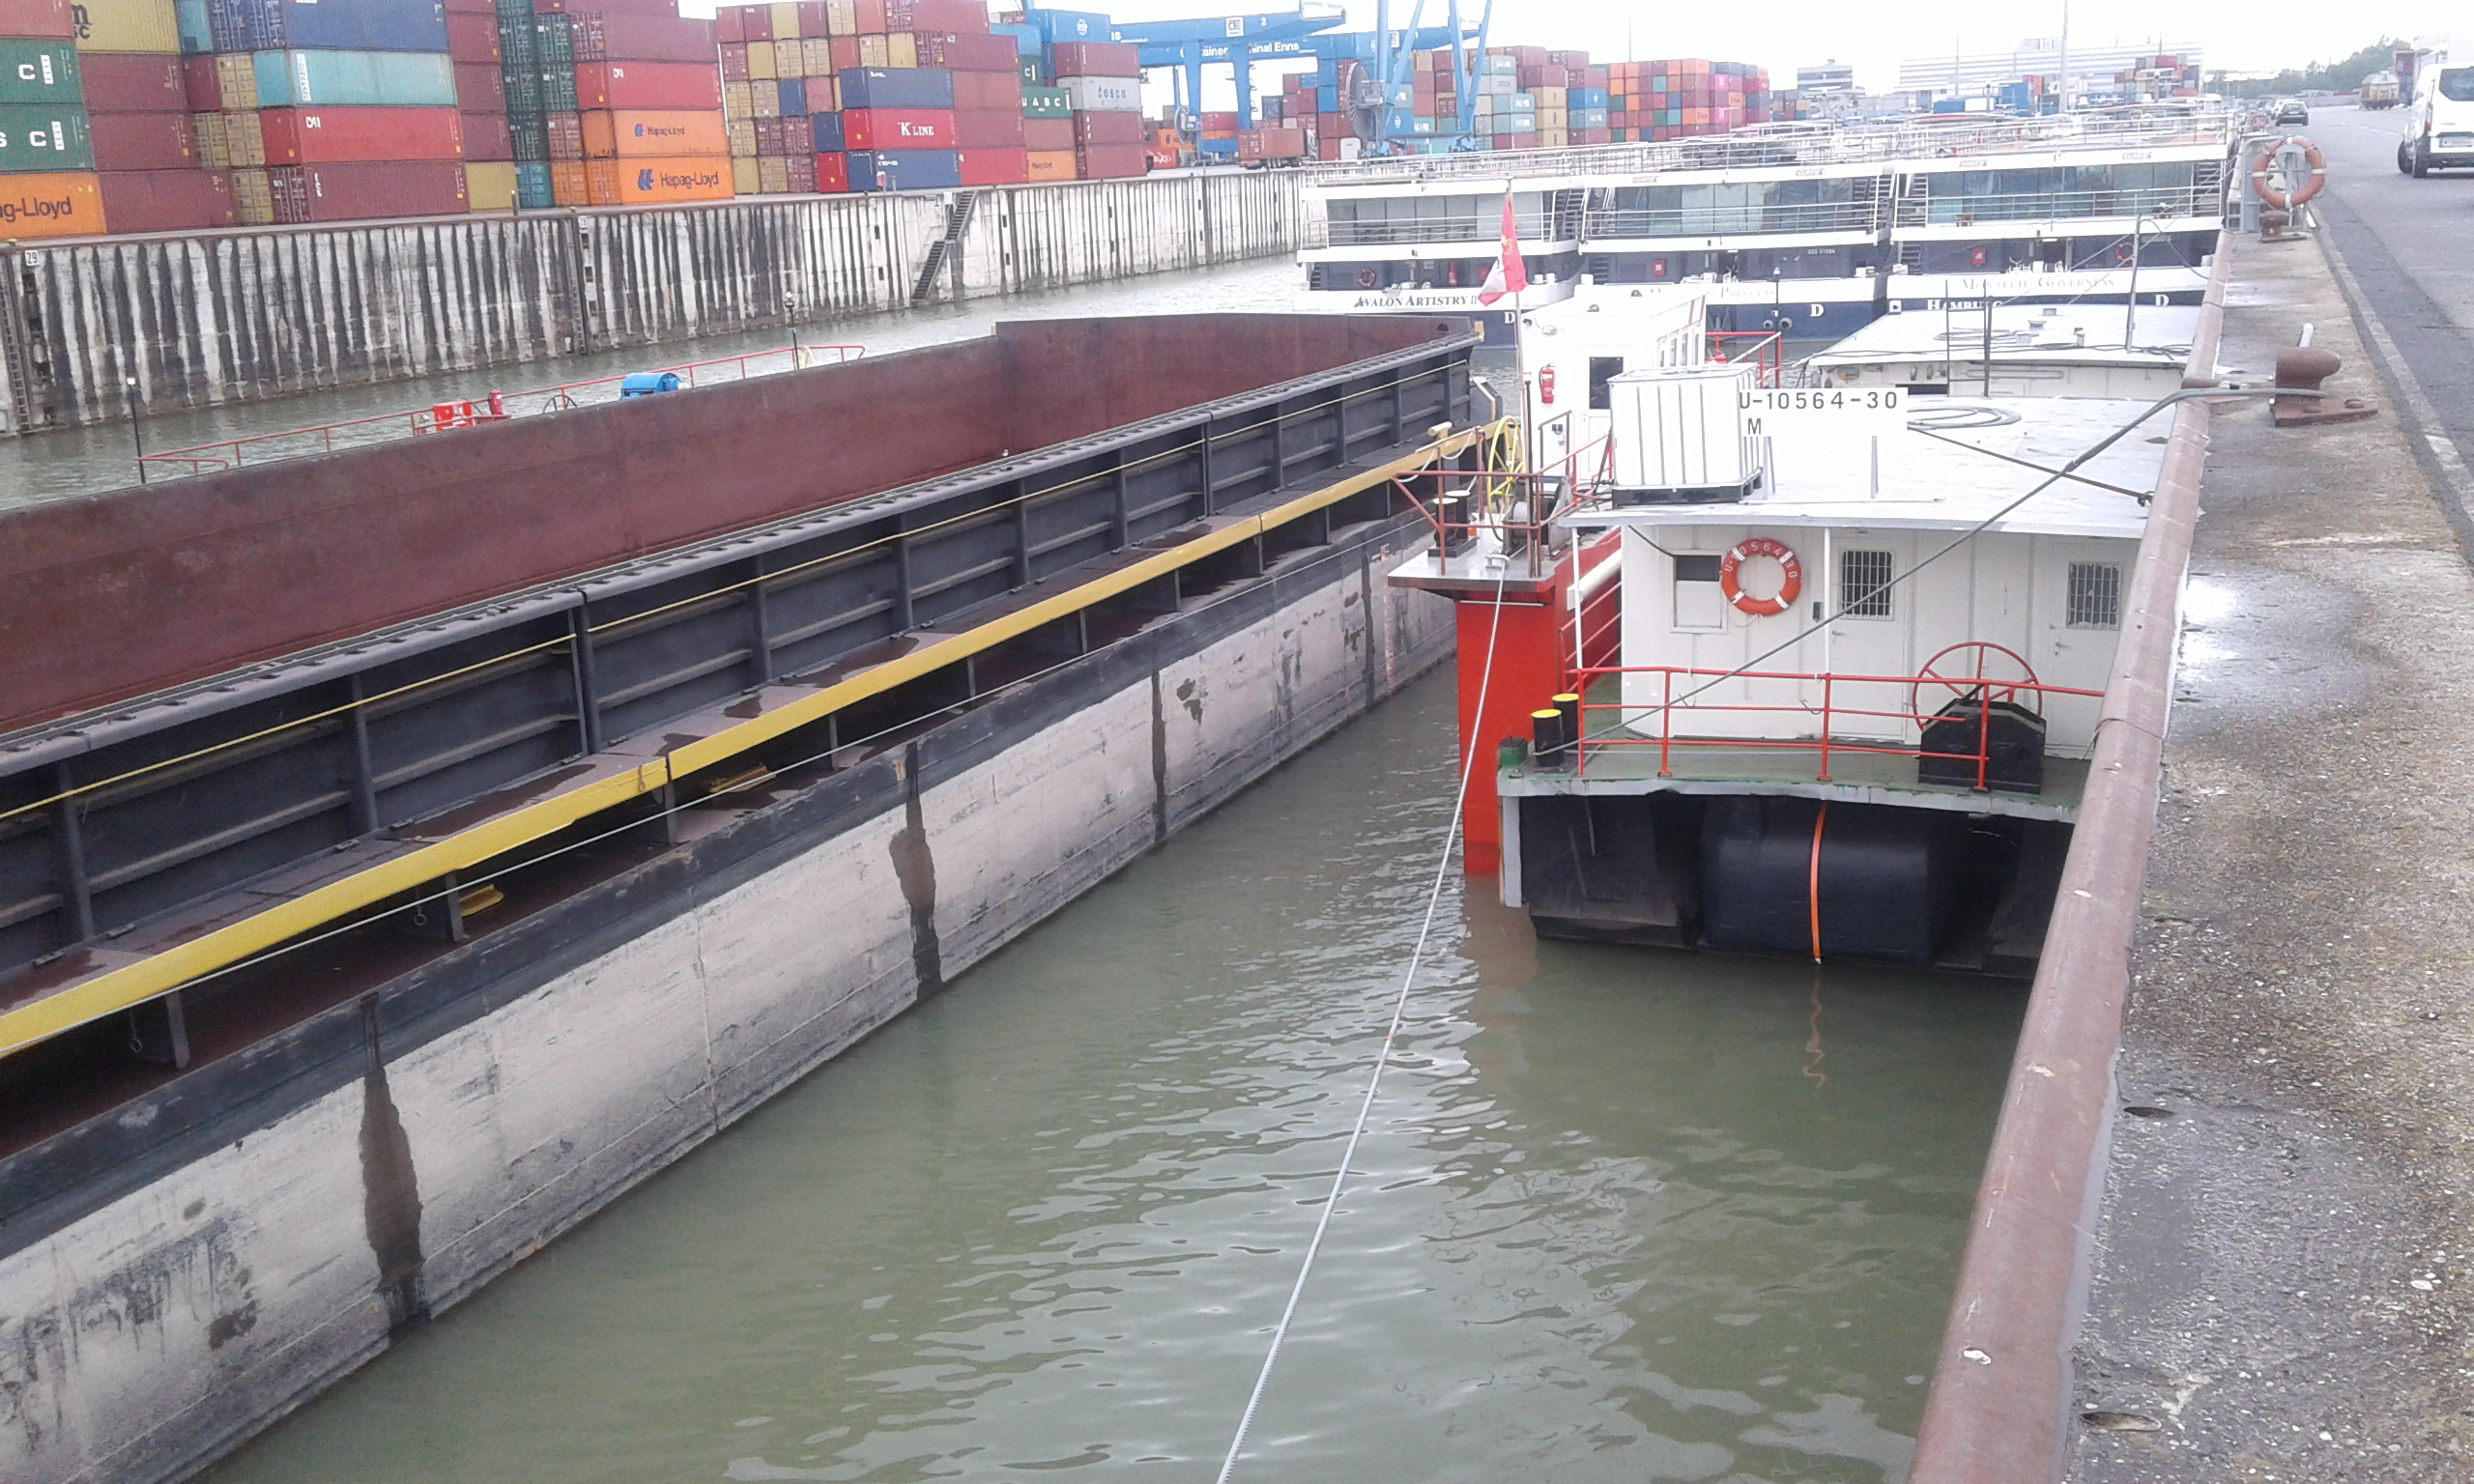 docking barge